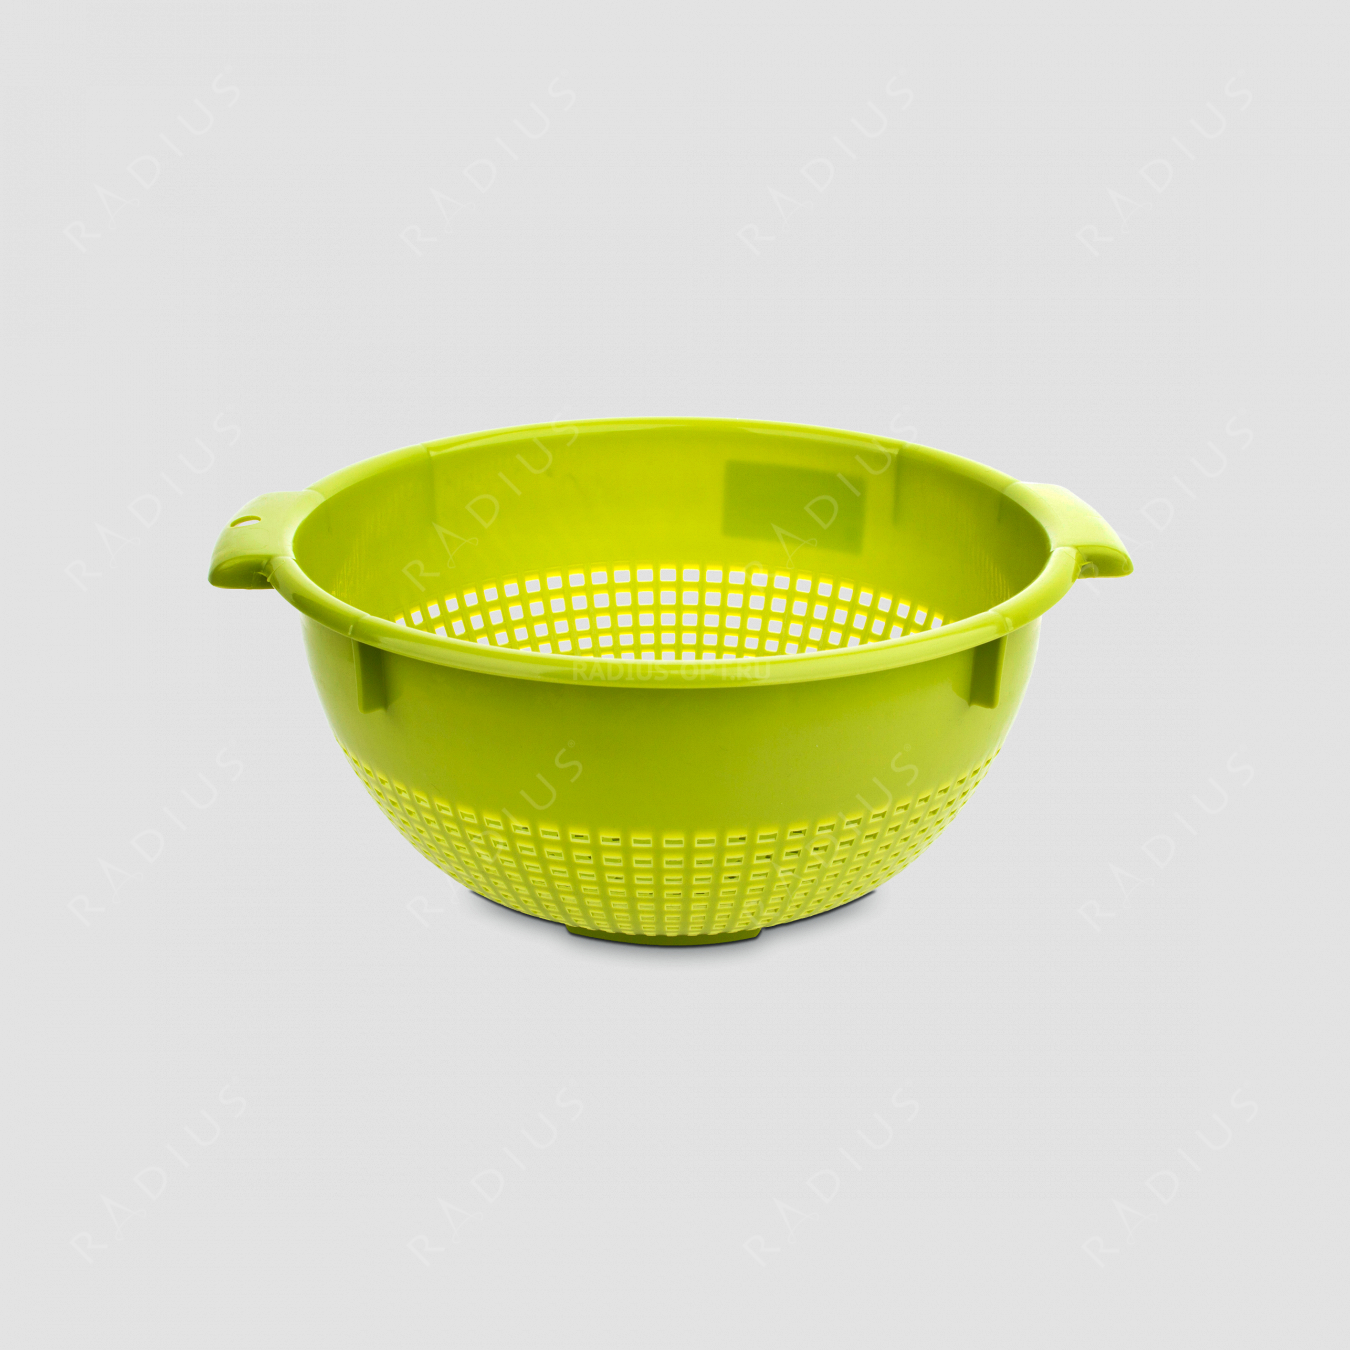 Дуршлаг, диаметр 26 см, цвет зеленый, серия Plastic tools, Westmark, Германия